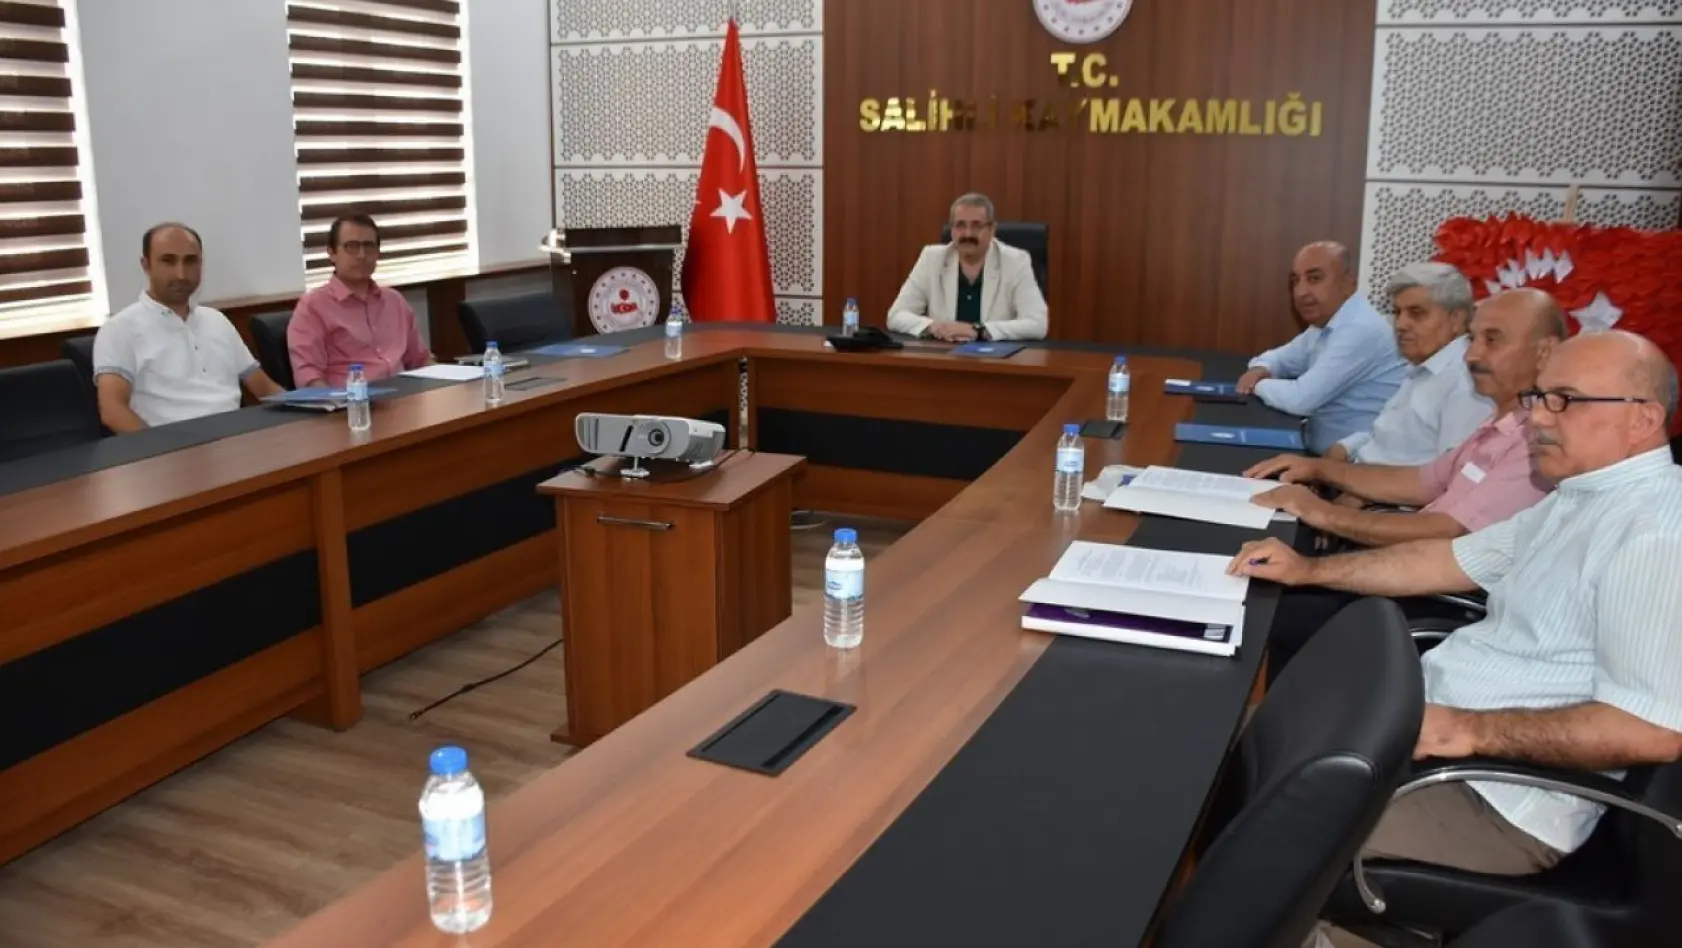 Salihli'de kurban bayramı öncesi komisyon toplandı